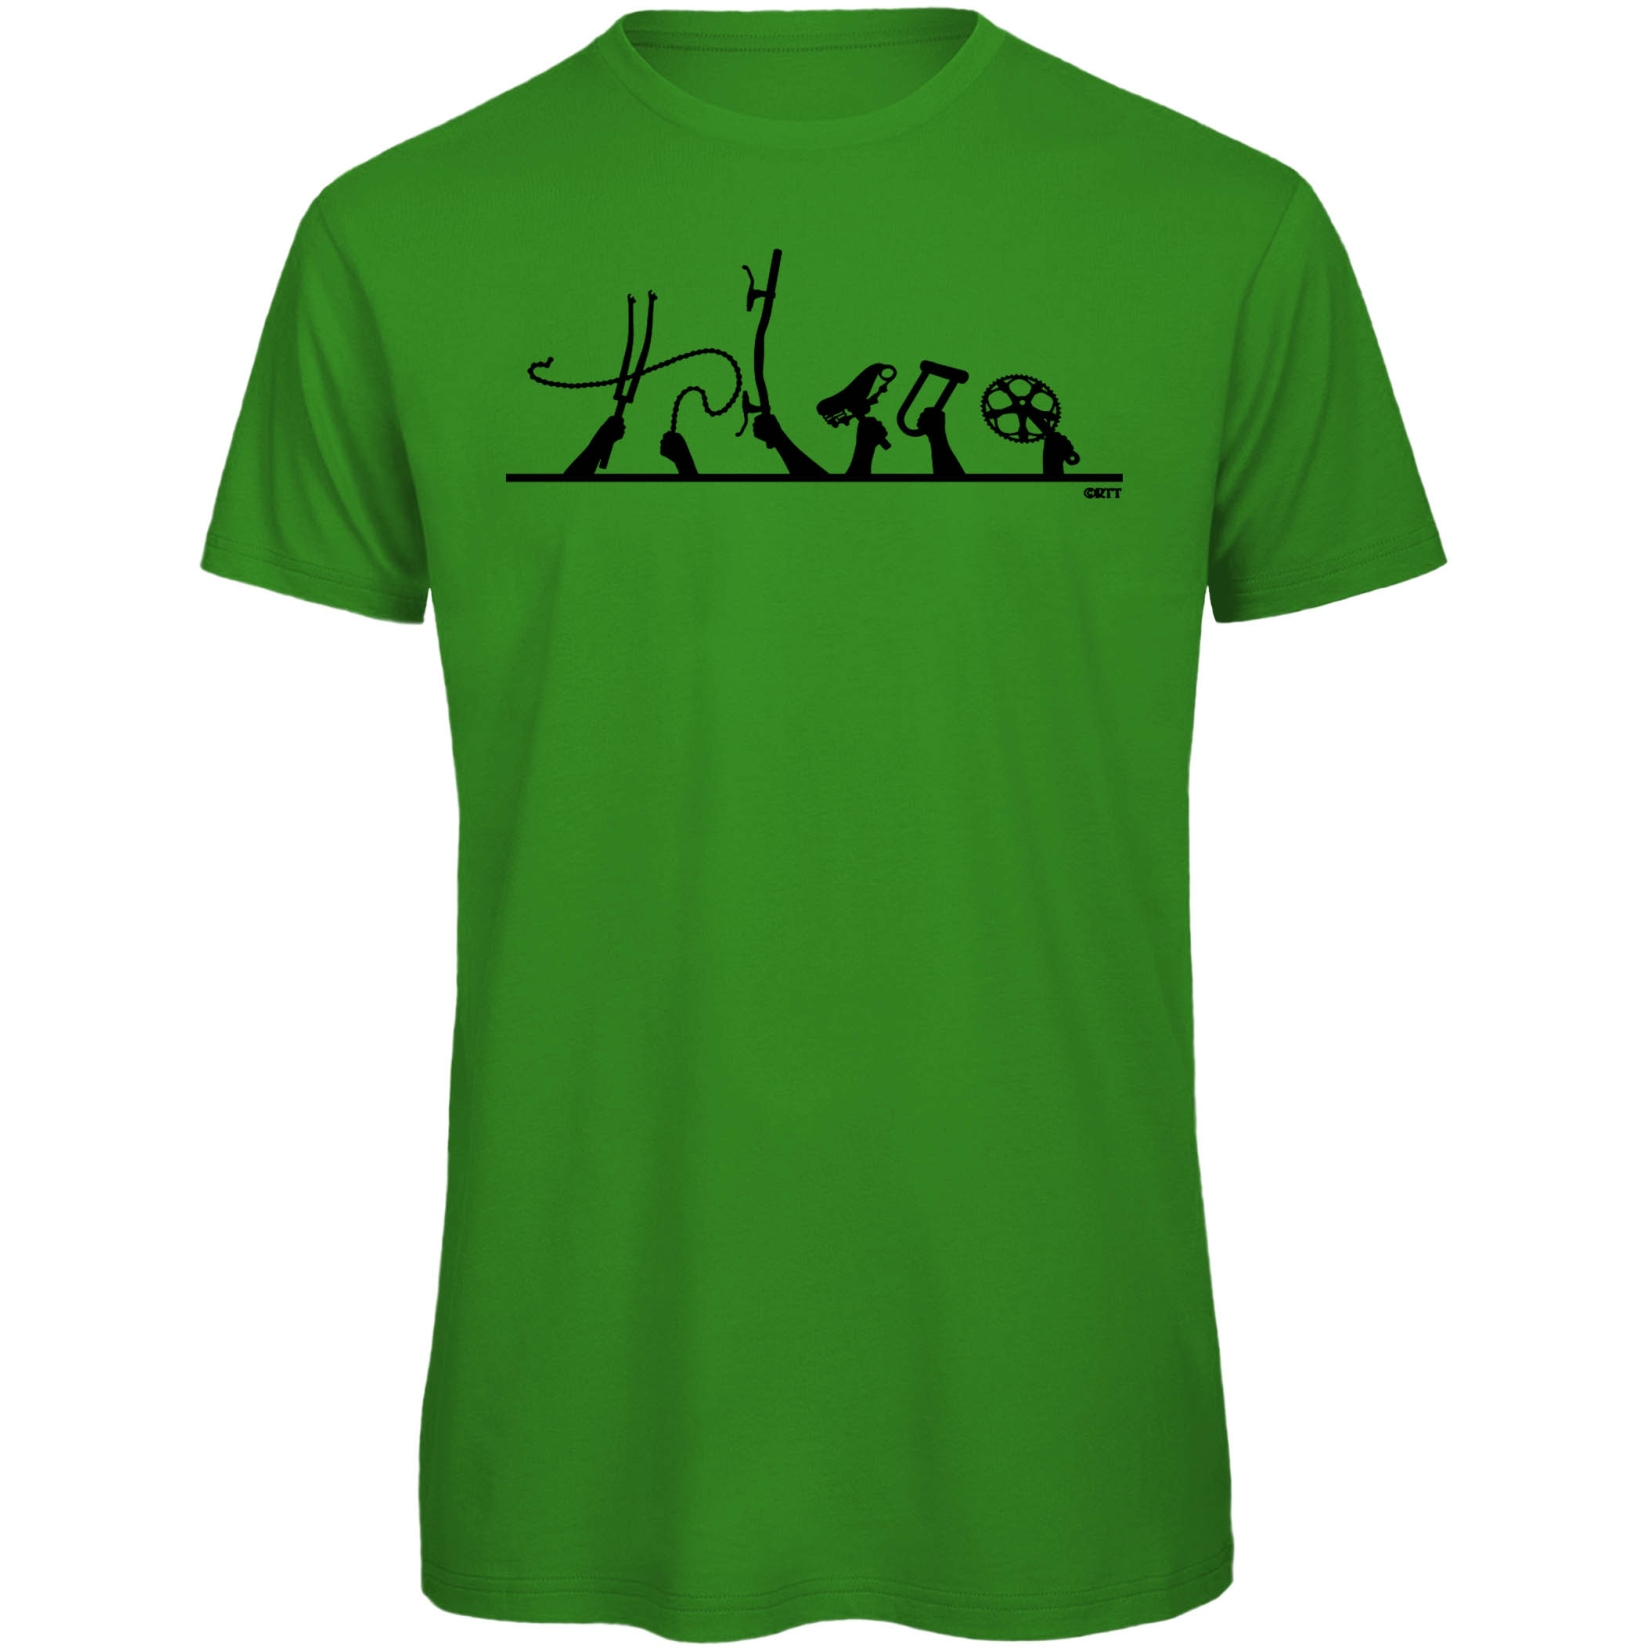 Produktbild von RTTshirts Critical Mass Fahrrad T-Shirt Herren - grün